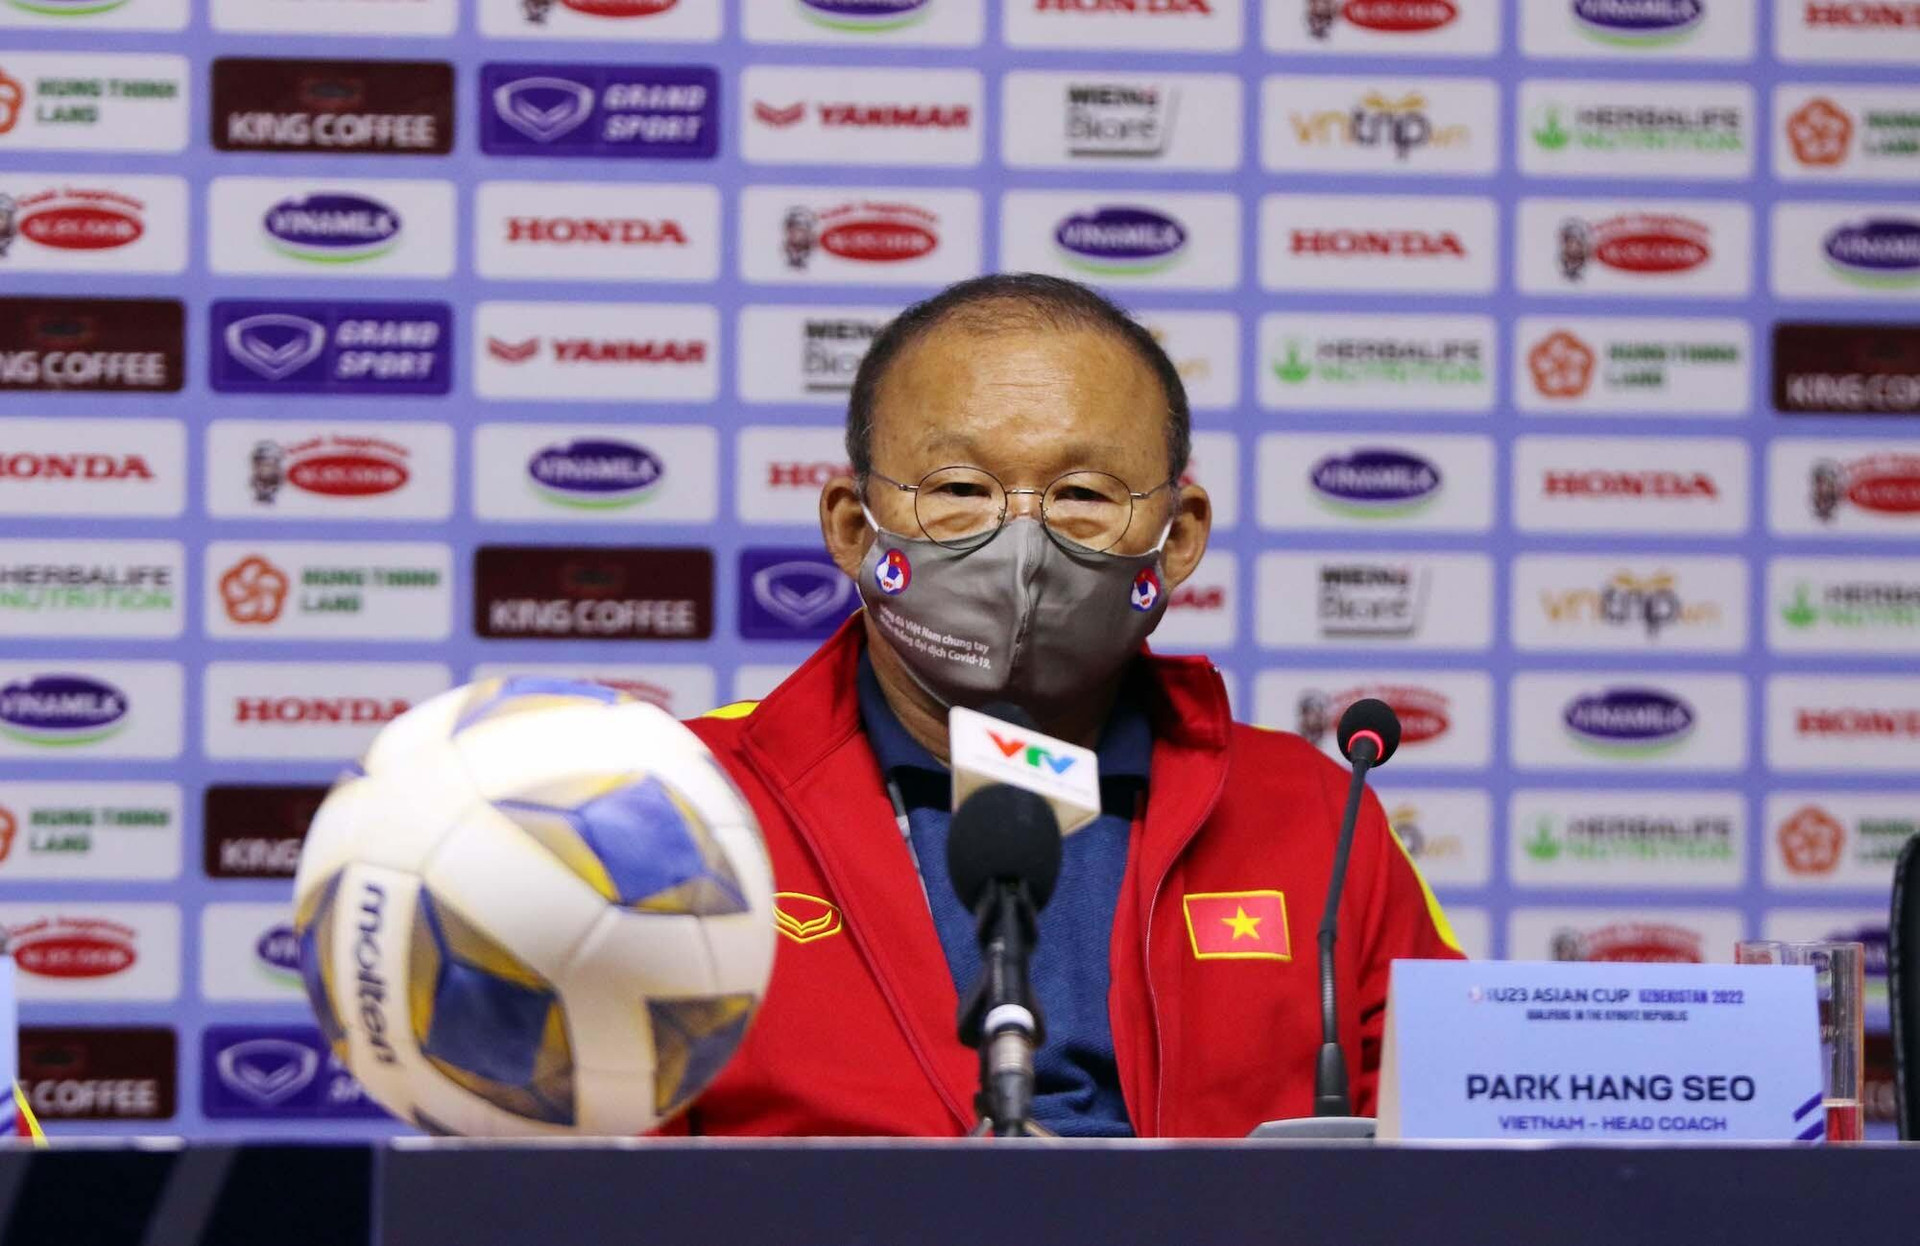 Chưa khi nào U23 Việt Nam khiến HLV Park Hang Seo thất vọng đến thế - 2